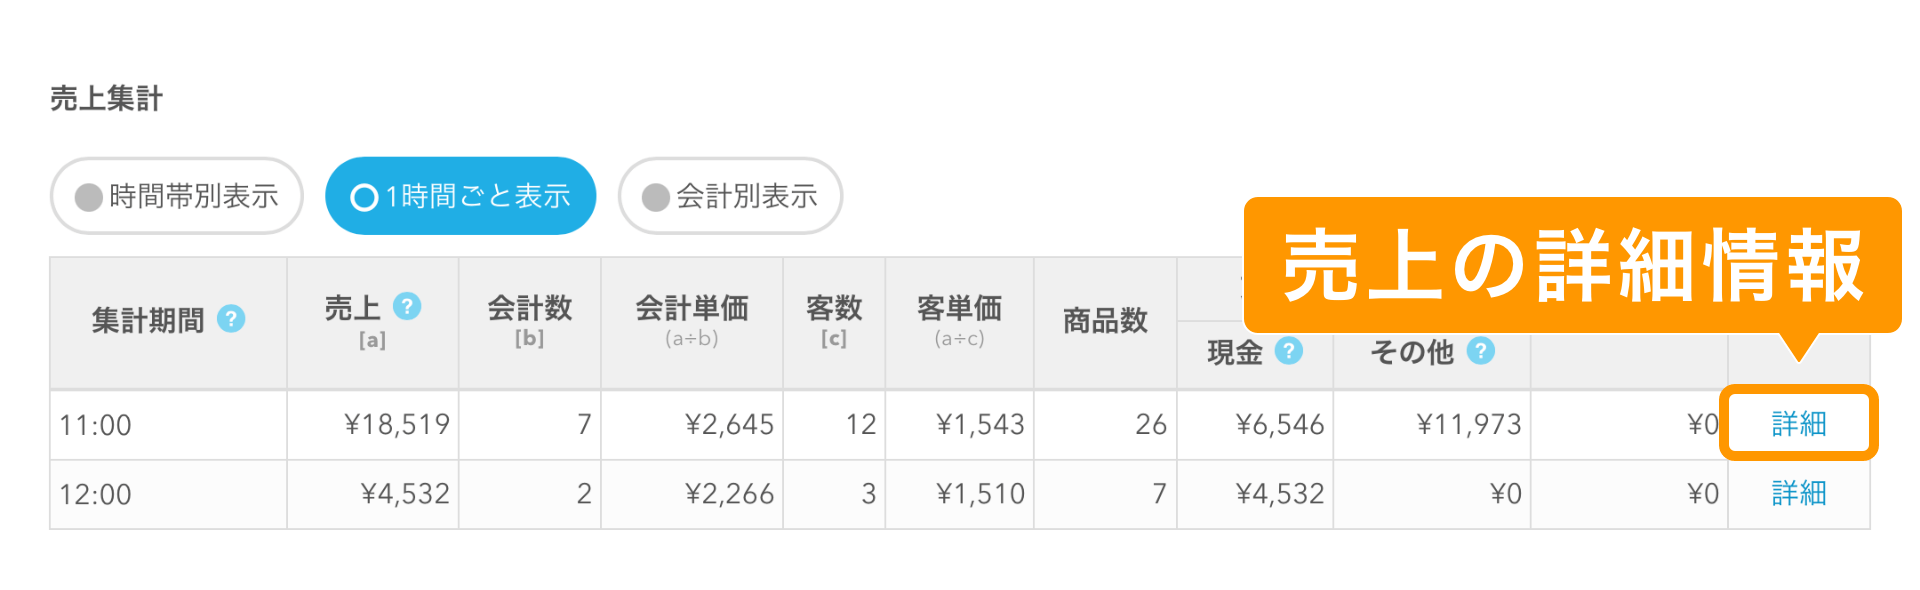 Airレジ 日別売上画面 時間帯別表示 詳細